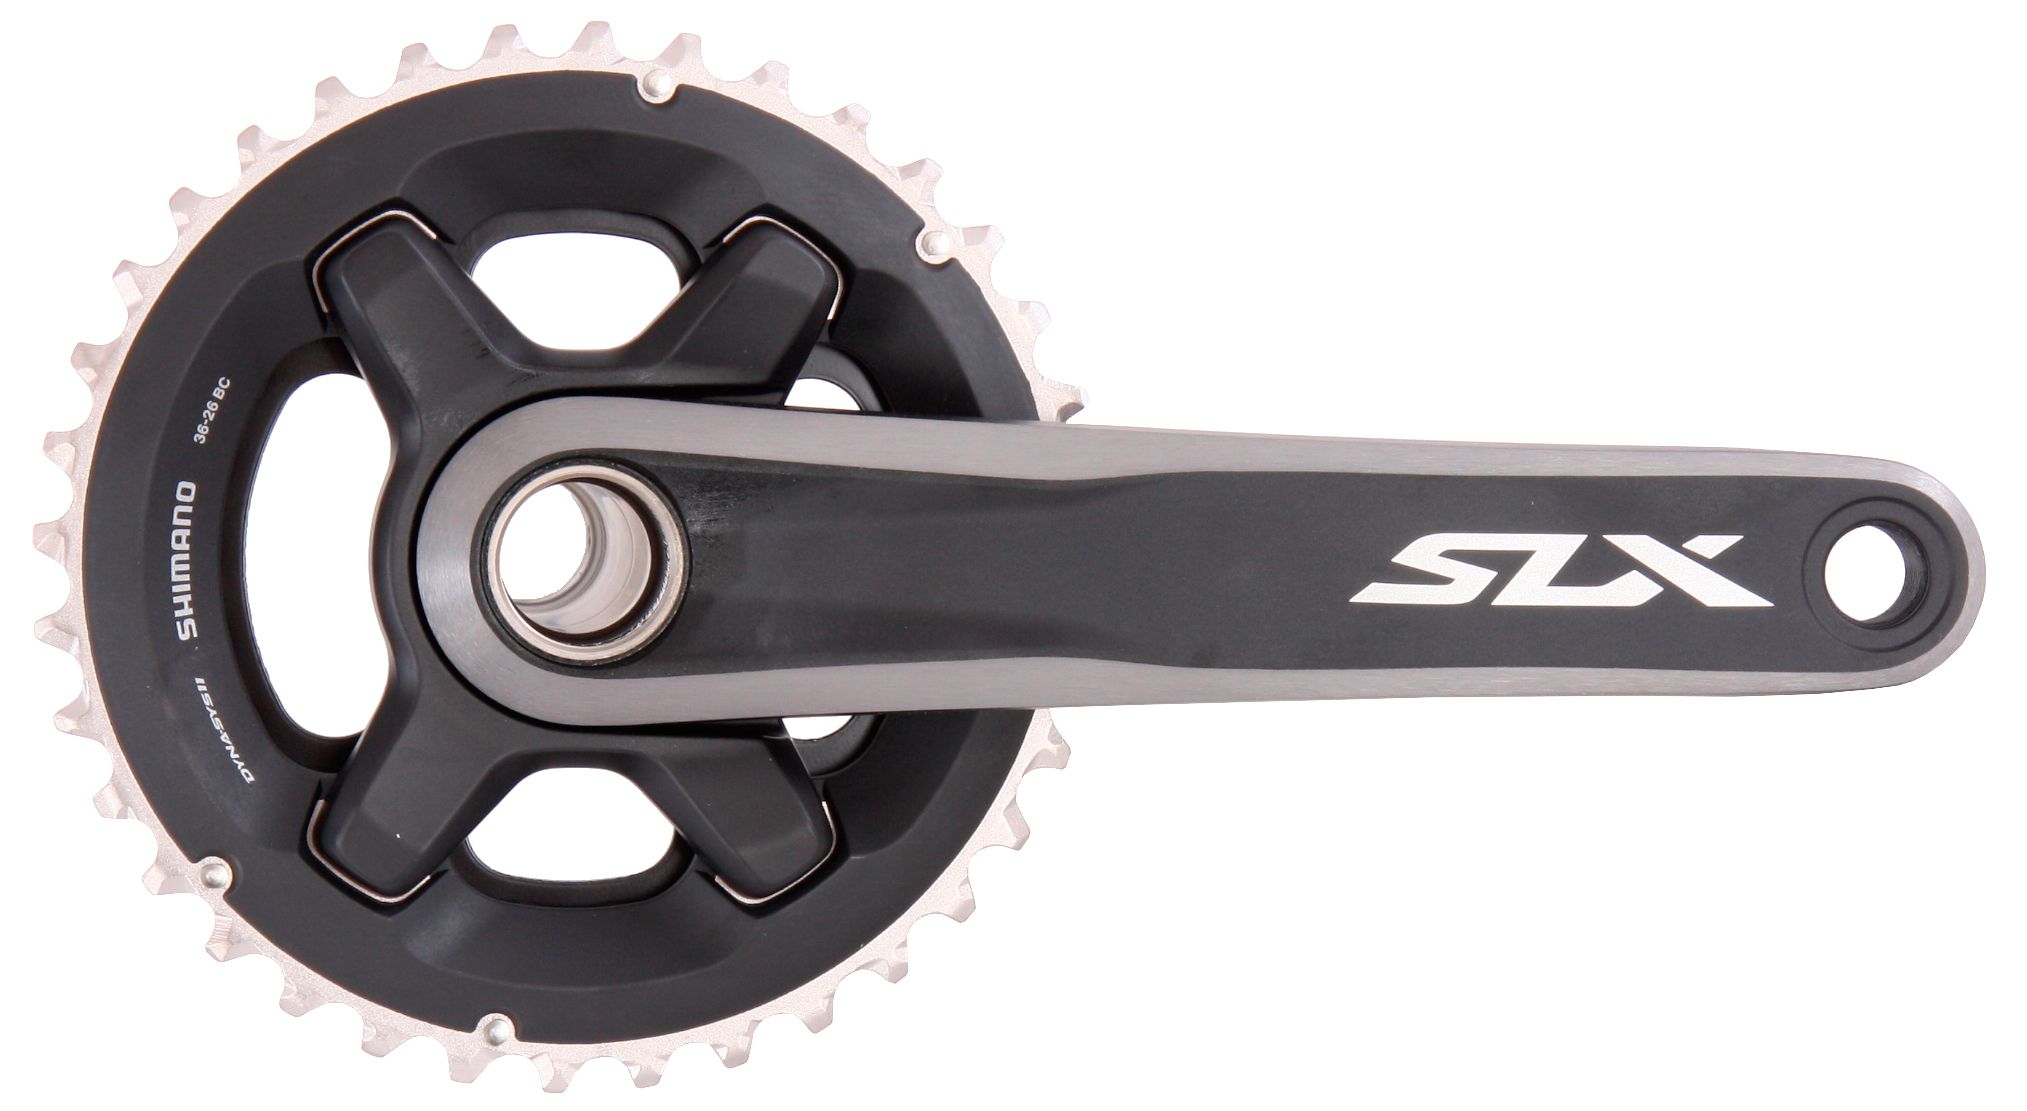  Система для велосипеда Shimano SLX M7000-2, 175 мм, 36x26T